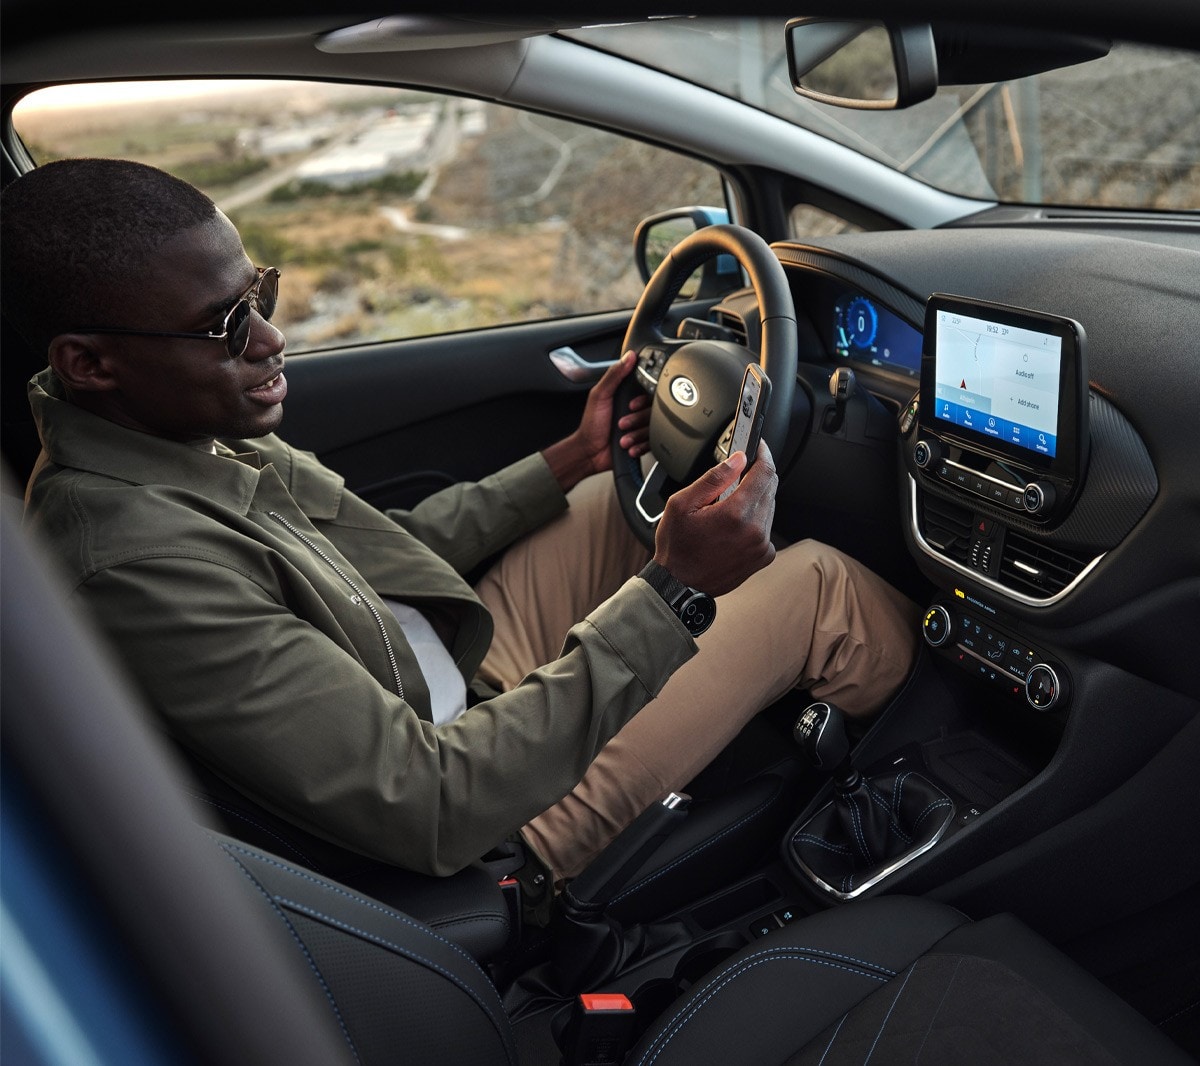 Ford Fiesta. Vue intérieure. Un homme assis sur le siège conducteur regarde son smartphone.